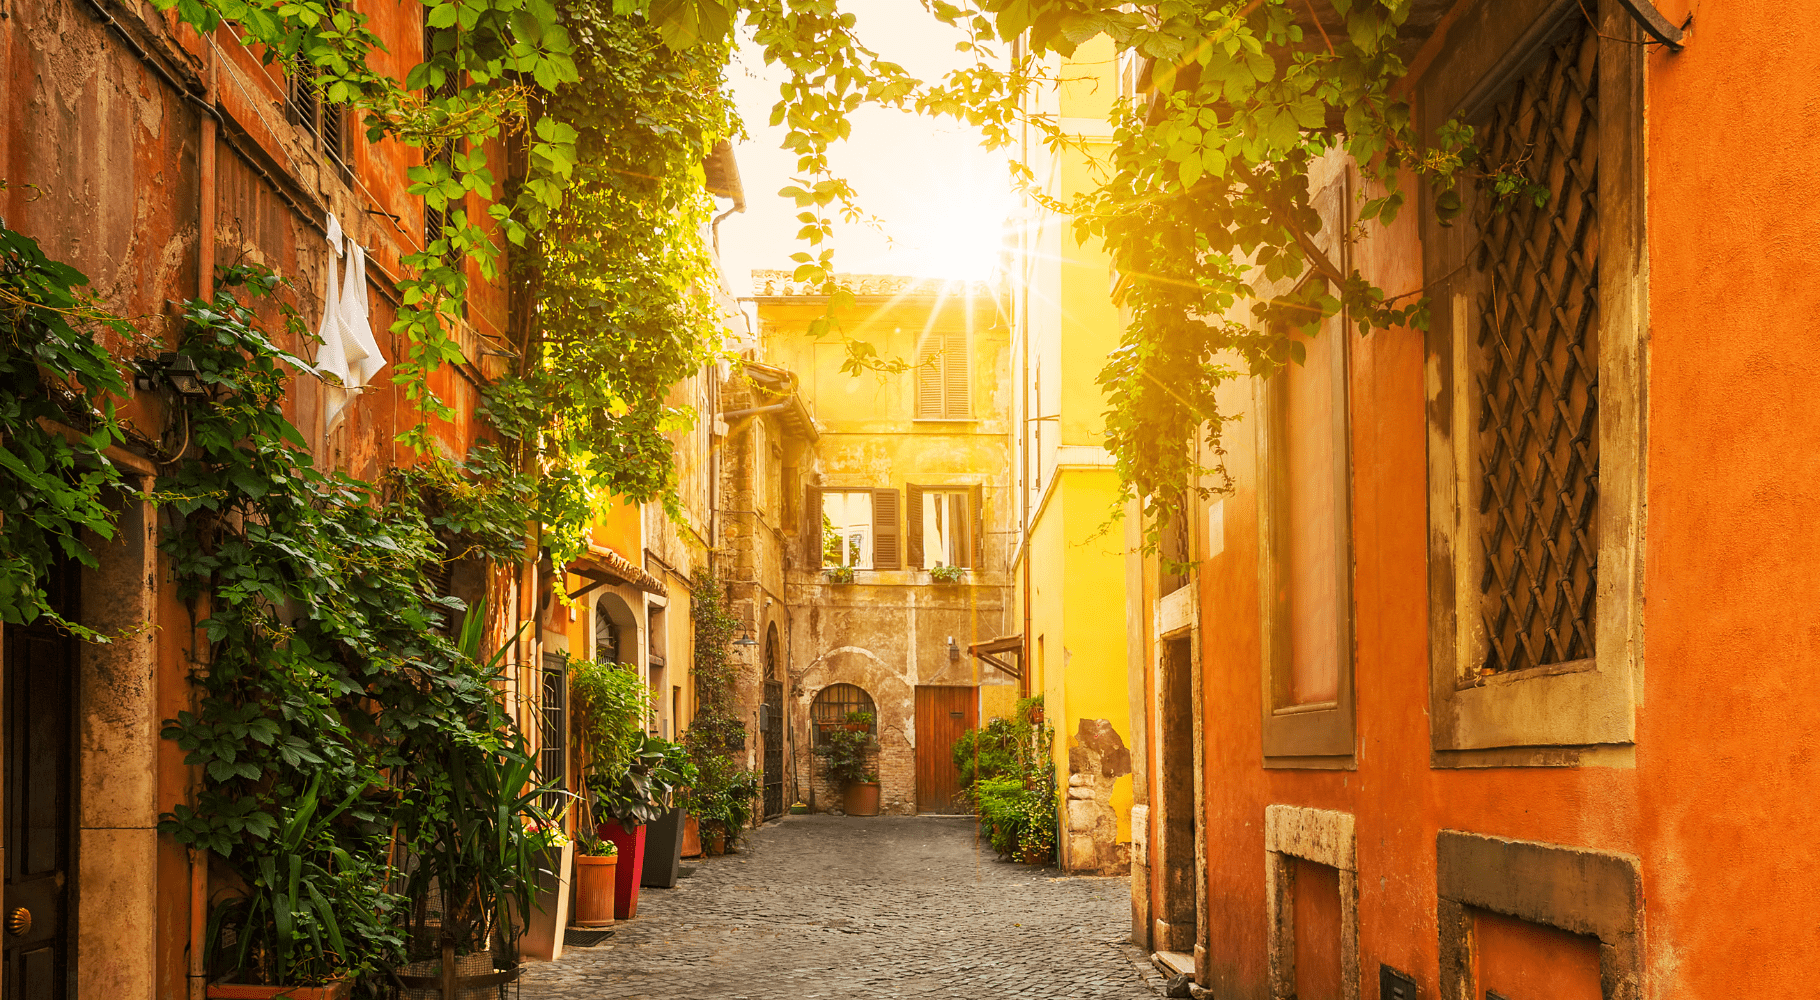 Uma ruela encantadora em Trastevere durante o dia, com o sol se pondo e banhando a cena em uma luz dourada, destacando a vegetação exuberante e a arquitetura tradicional com cores quentes